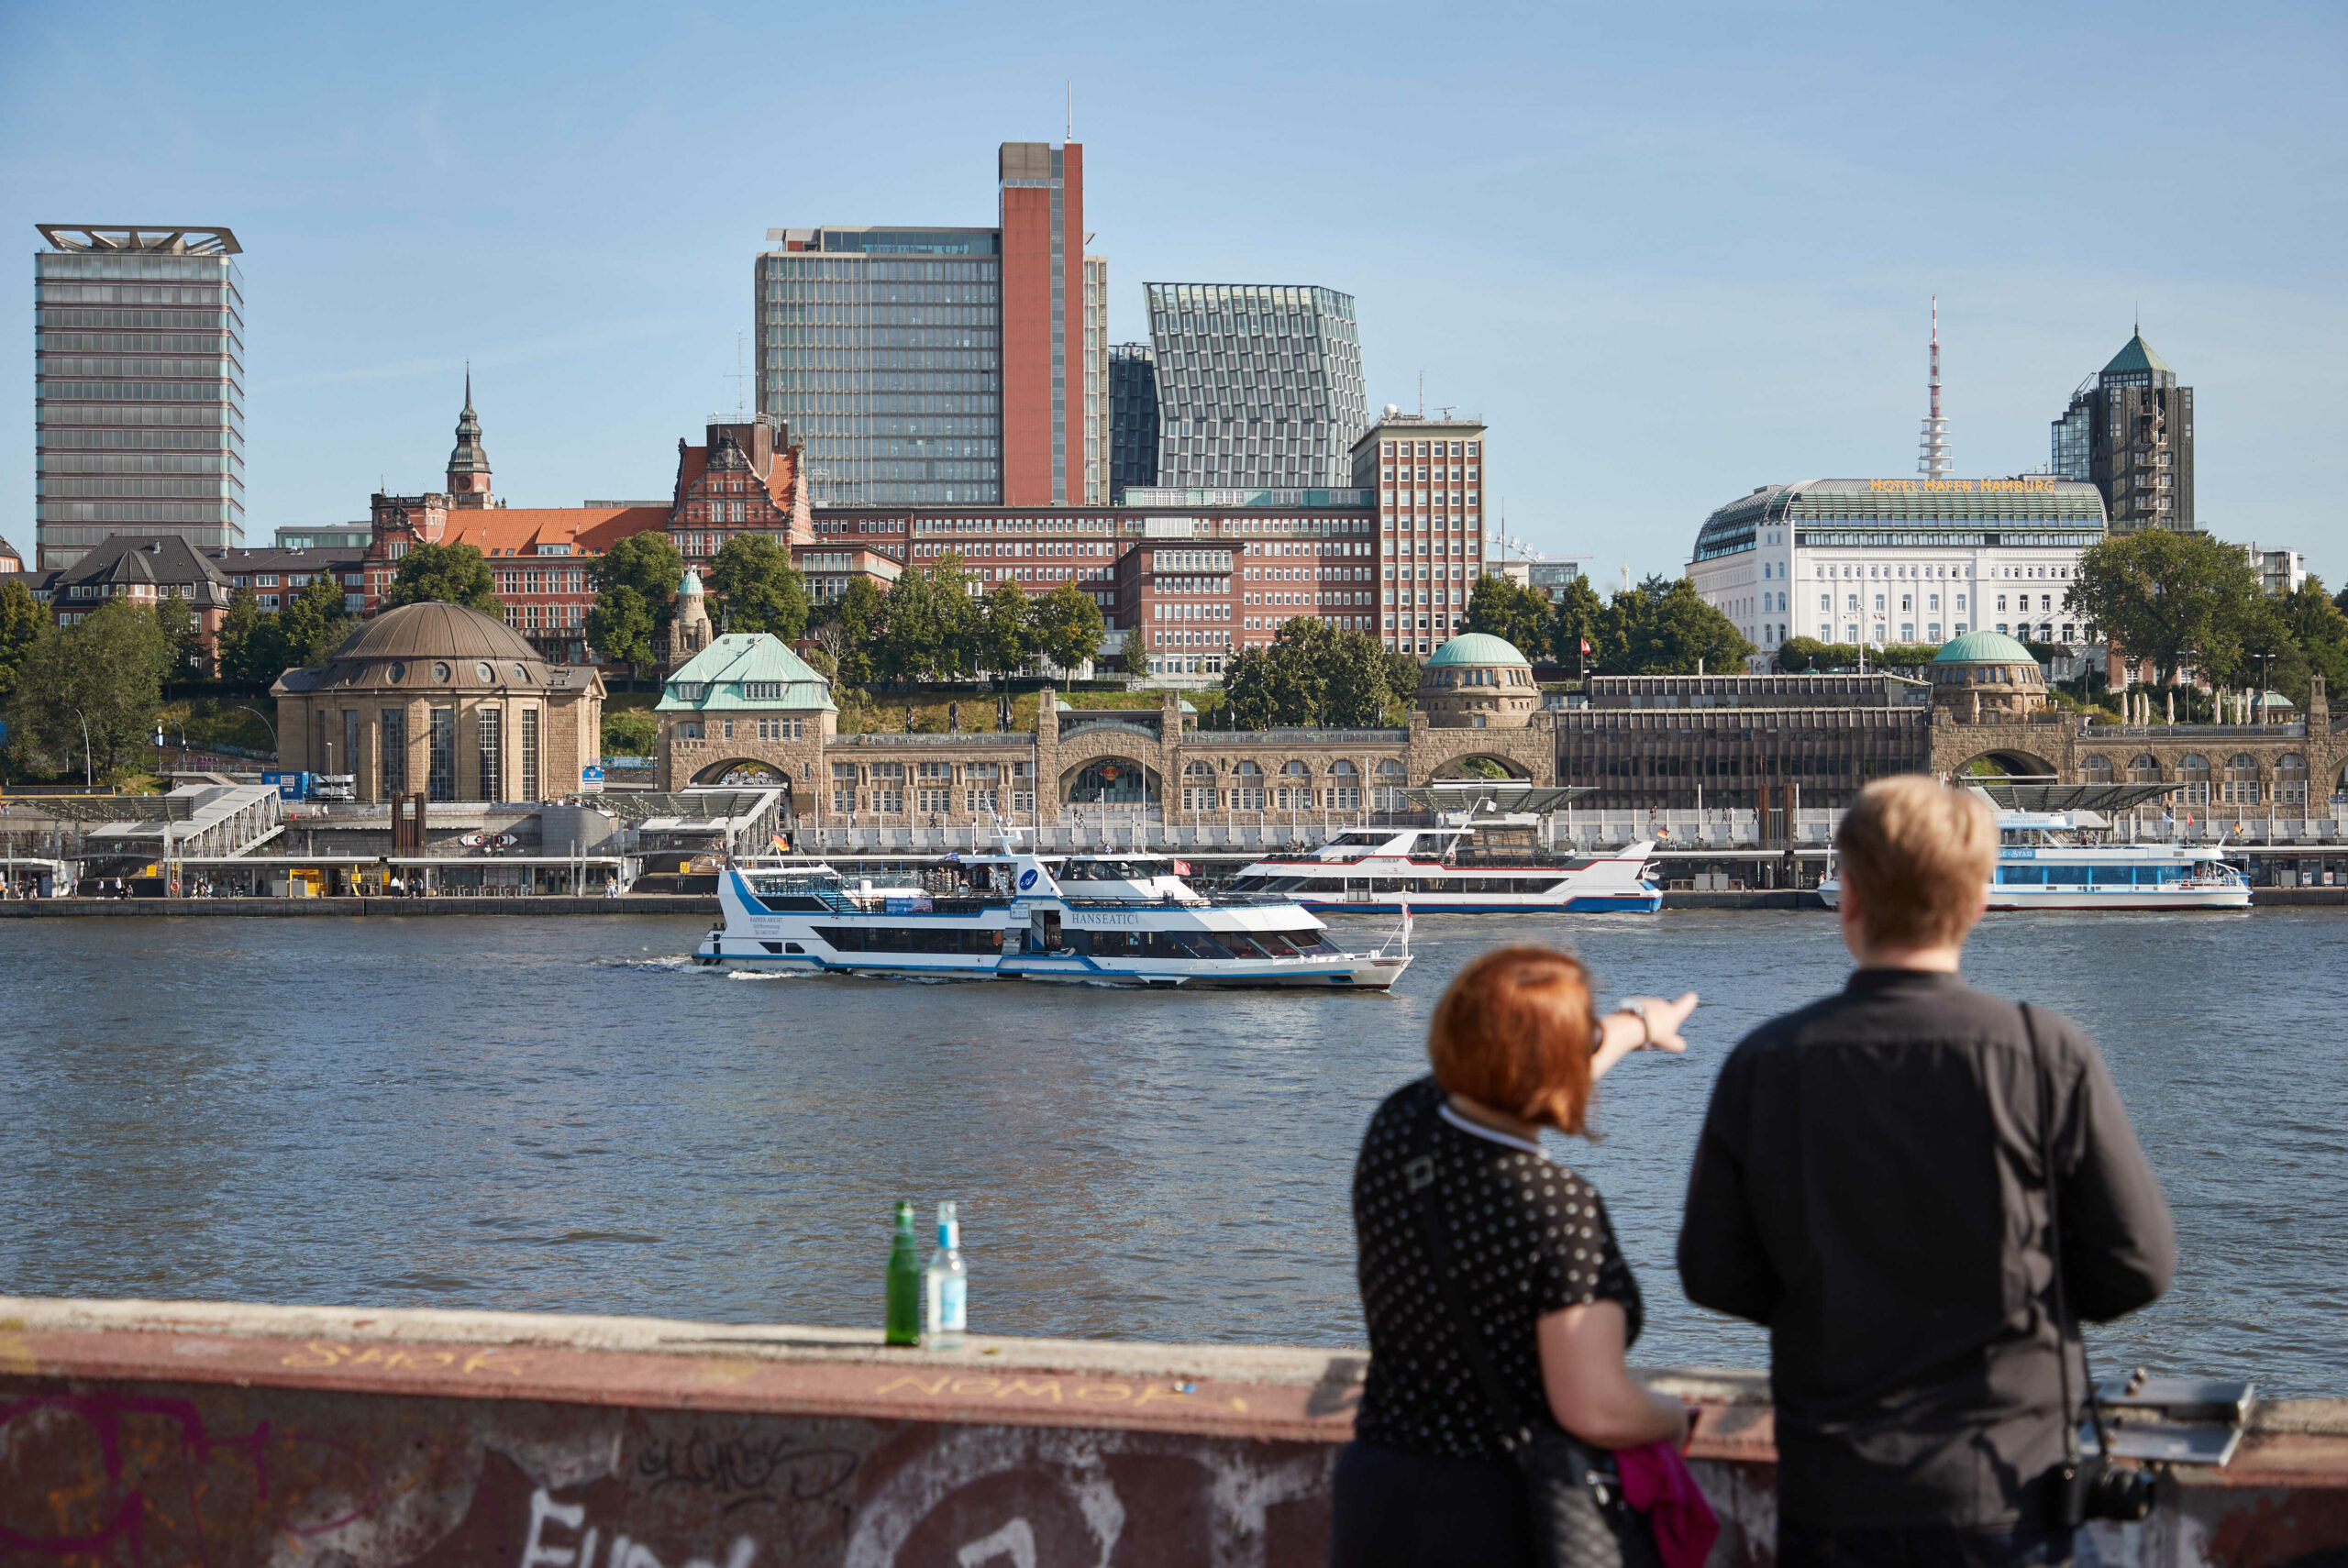 Zwei Menschen betrachten bei Sonnenschein im Hamburger Hafen die Stadt. Im Hintergrund sind der Alte Elbtunnel und die Landungsbrücken zu sehen.